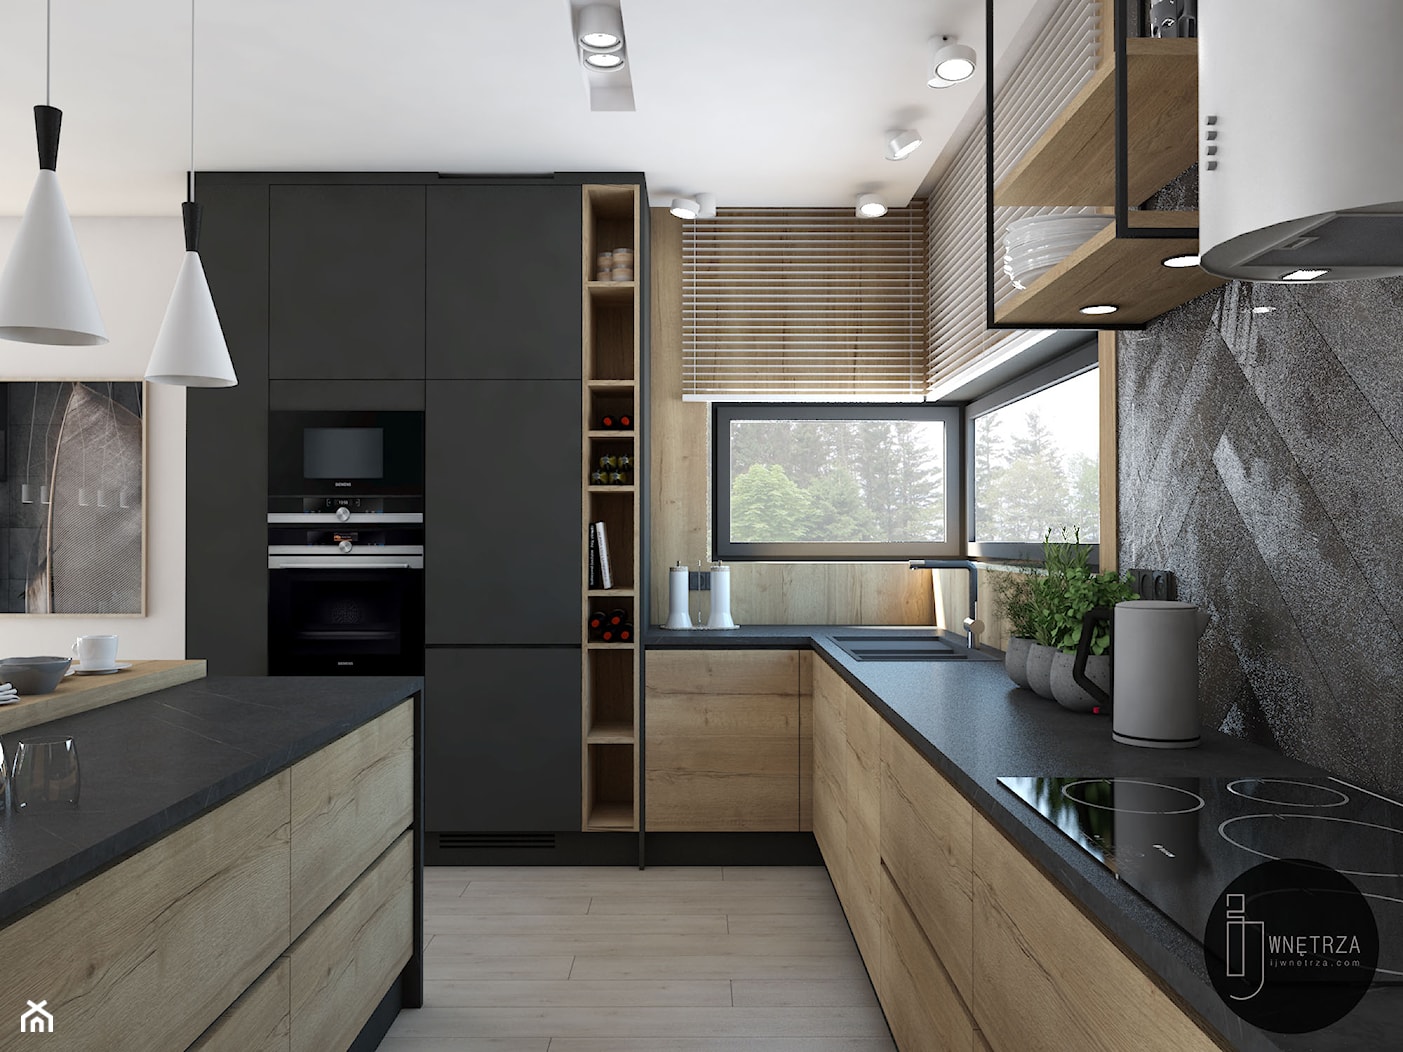 Kuchnia&Salon w domu jednorodzinnym - zdjęcie od IJ Studio - Homebook